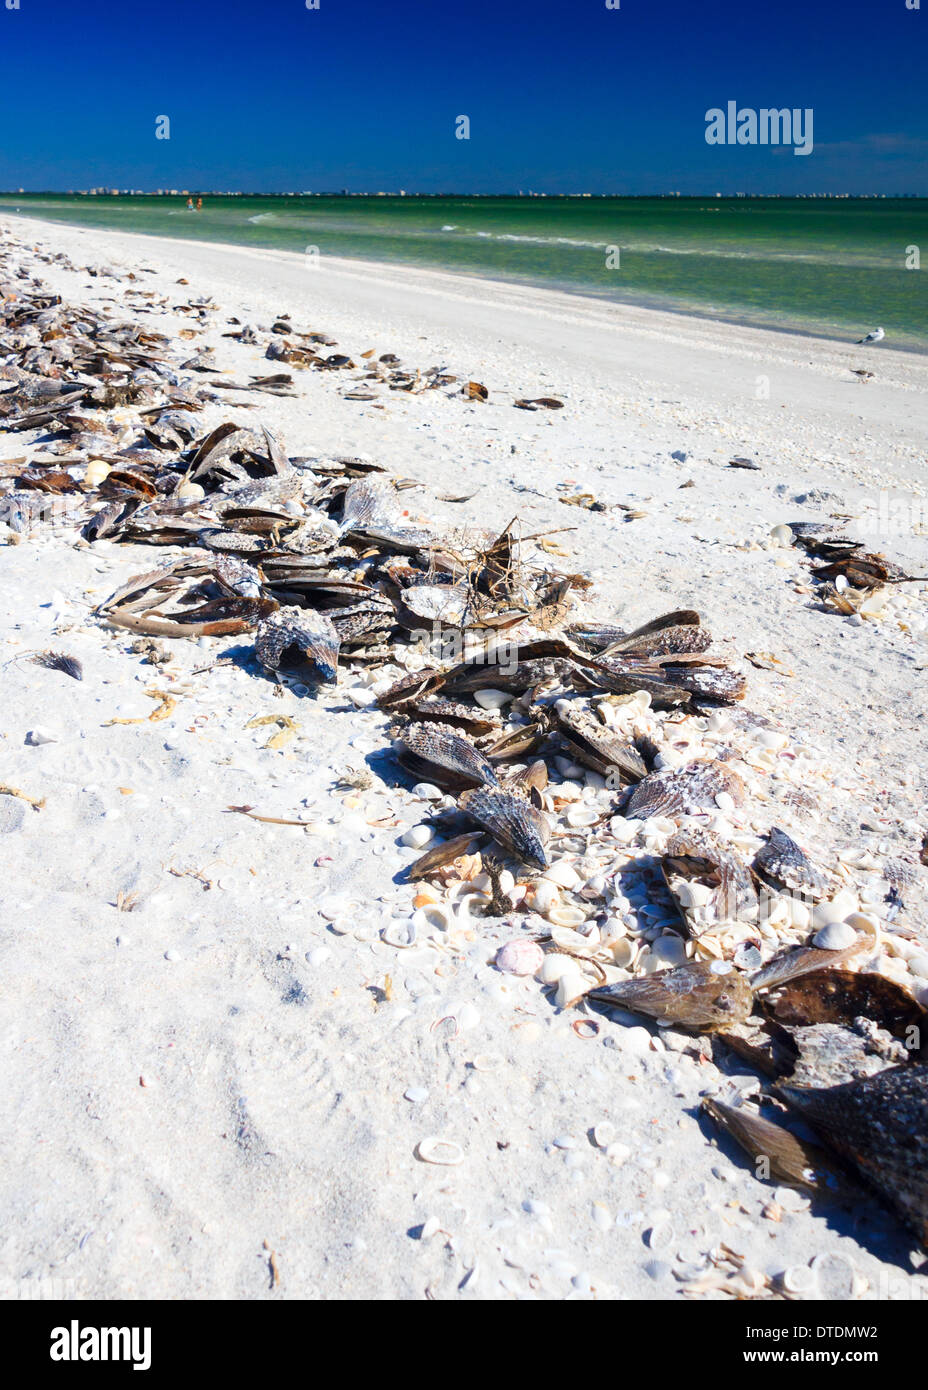 Coquilles de mer par la rive en Floride dans l'île de Sanibel beach par le golfe du Mexique. Prise en décembre, montre une ambiance d'hiver en Floride Banque D'Images